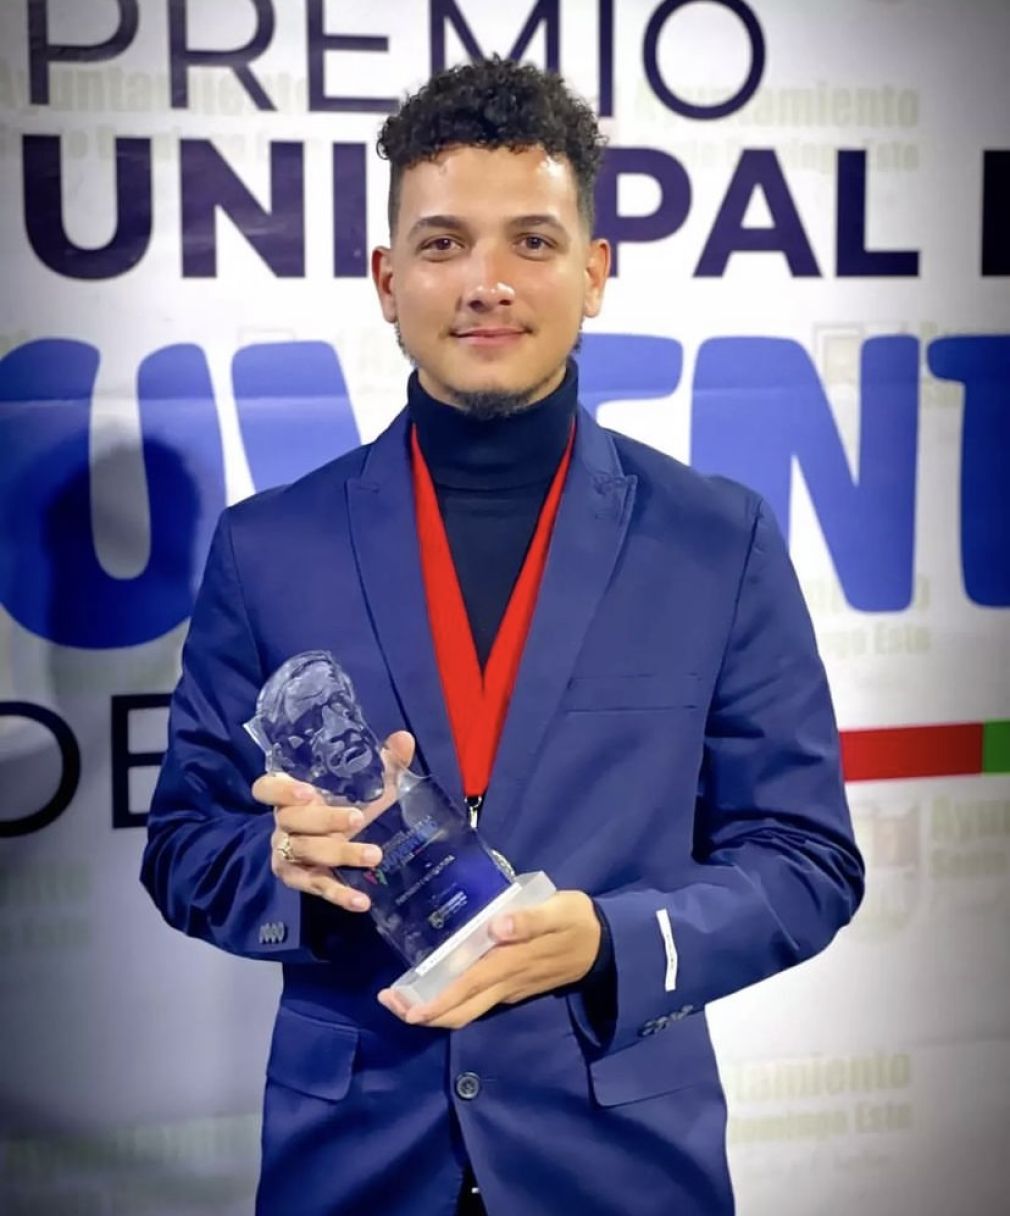 Oscar Féliz Guzmán dio a conocer su talento por primera vez en el Festival Internacional de Cortometrajes Minuto del Agua, resultando ganado del primer lugar en 2017.